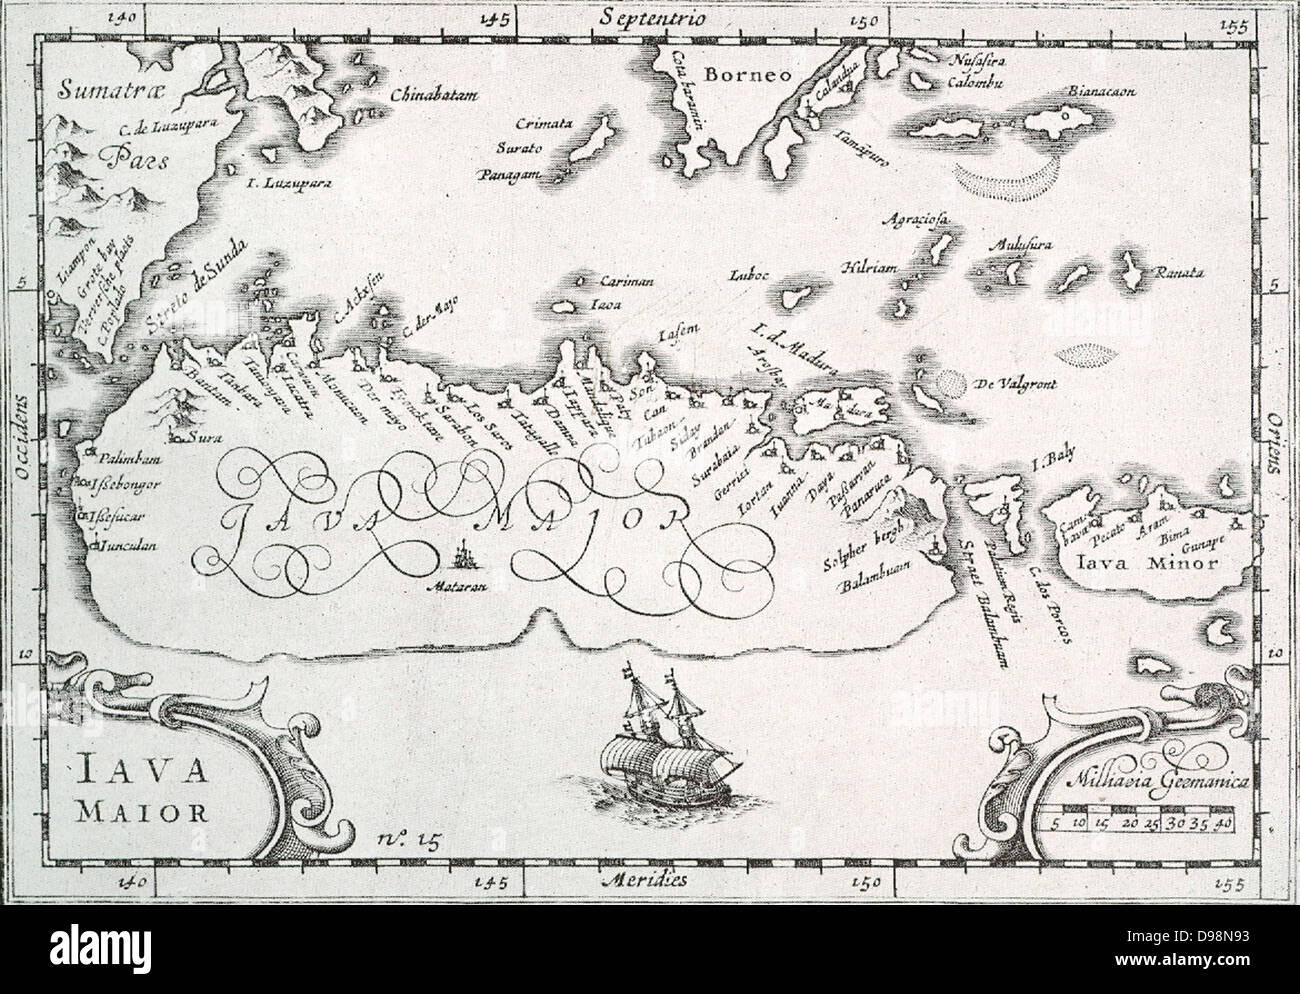 Mappa dell'isola di Giava a Bali e Lombok, come l'olandese, che ha visitato per la prima volta l'arcipelago indonesiano, lo sapevo. L'arte di Java era ancora piuttosto sconosciuto e è solo sketchily indicato. Preso dalla gazzetta di Houtman (1595). Foto Stock